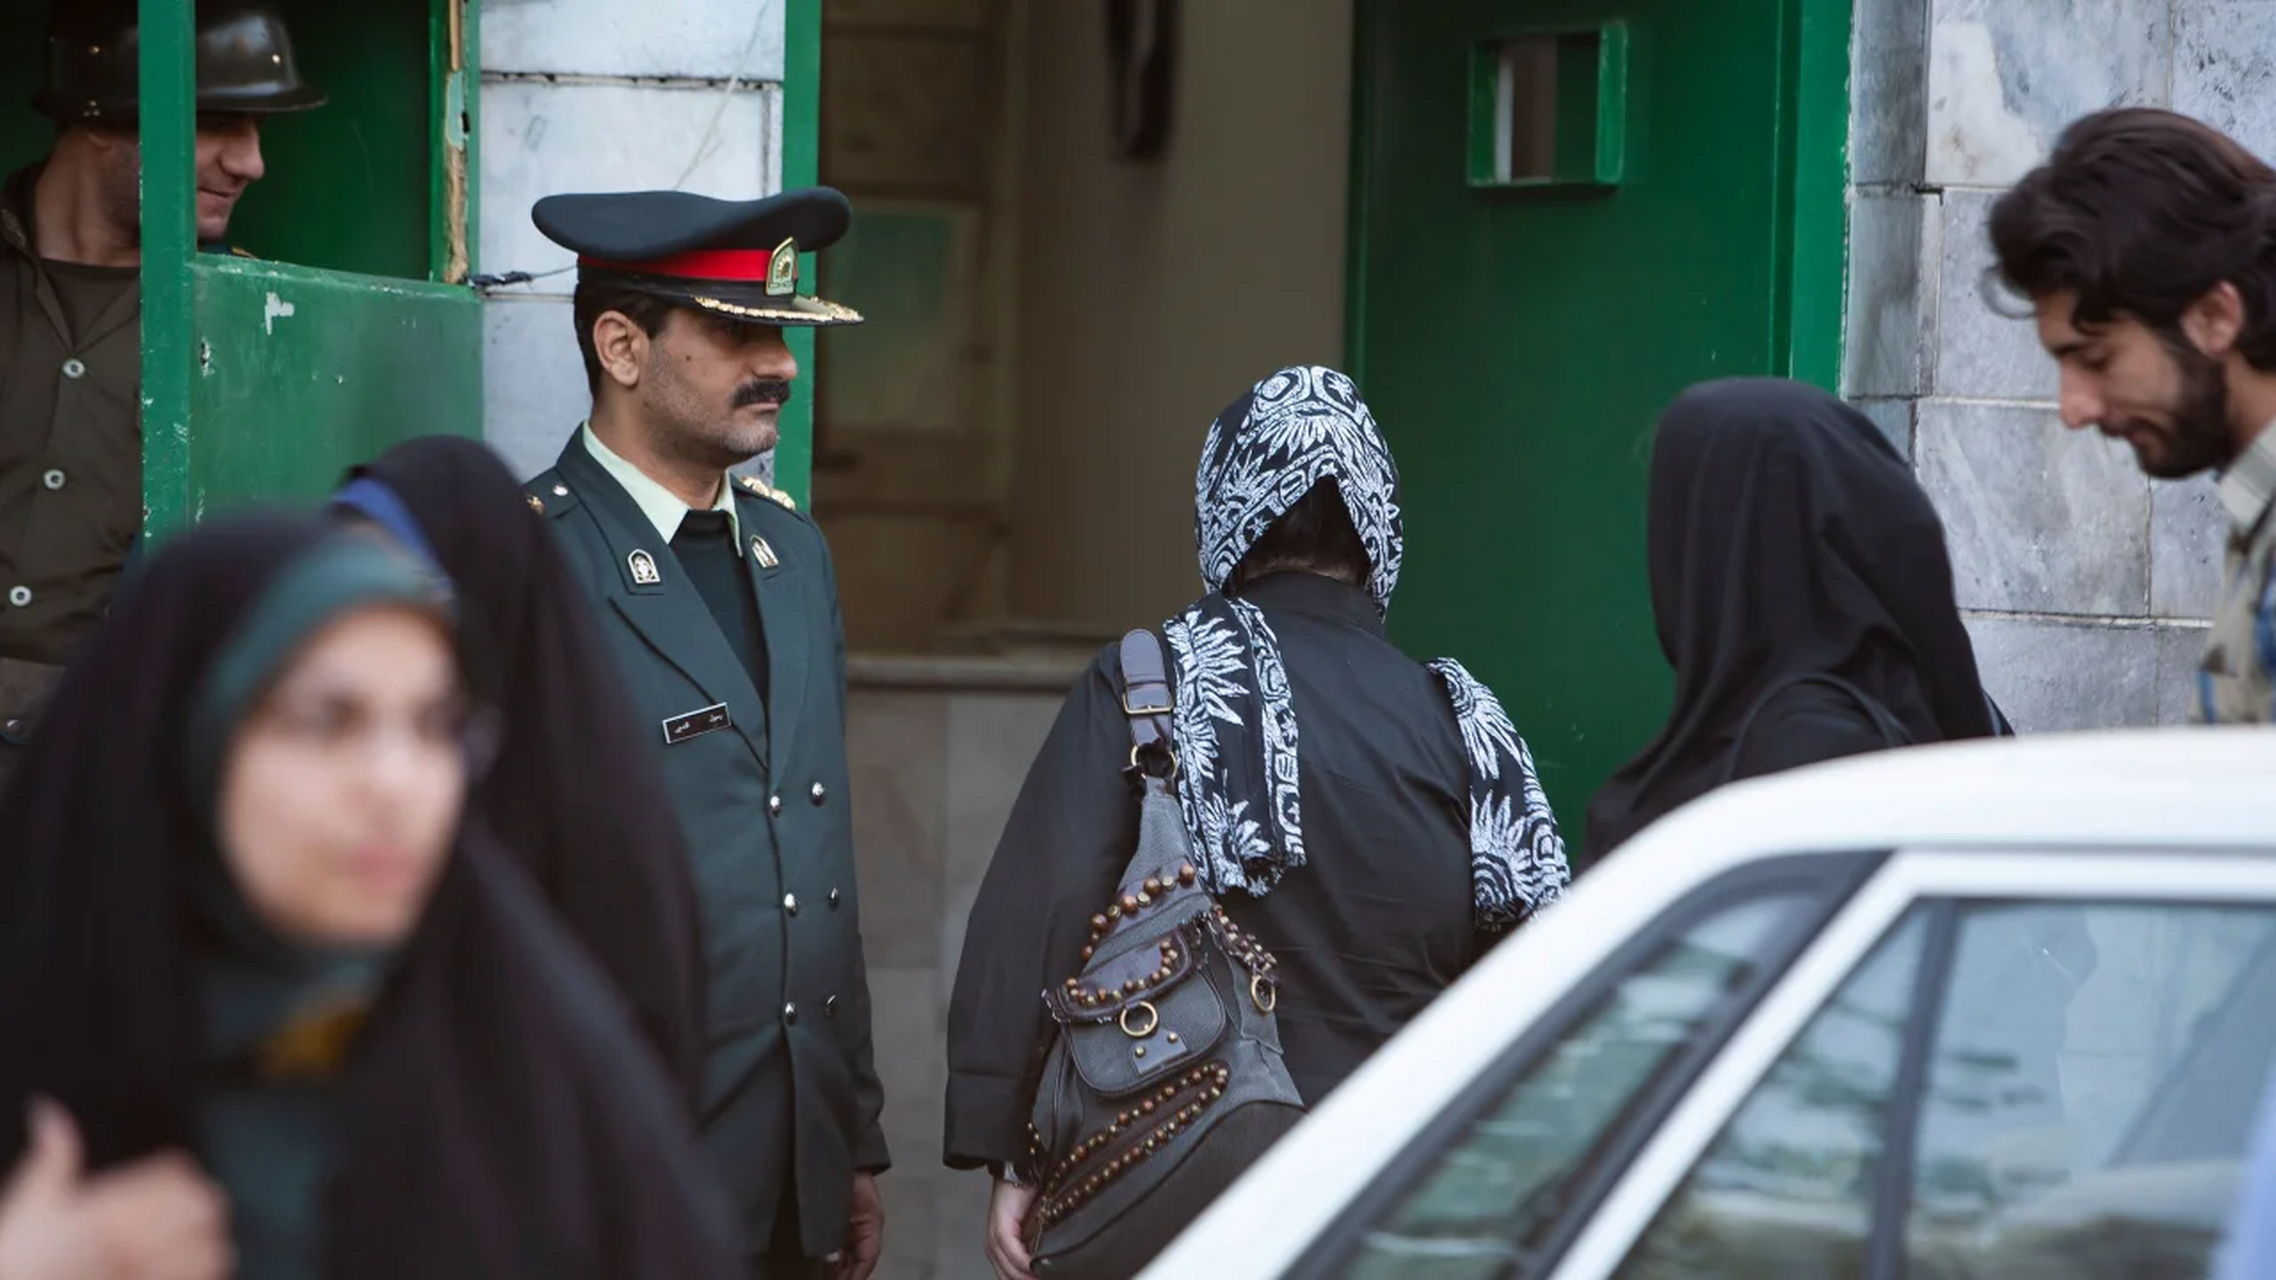 官方媒体称,伊朗道德警察恢复头巾巡逻 据官方媒体周日报道,伊朗的